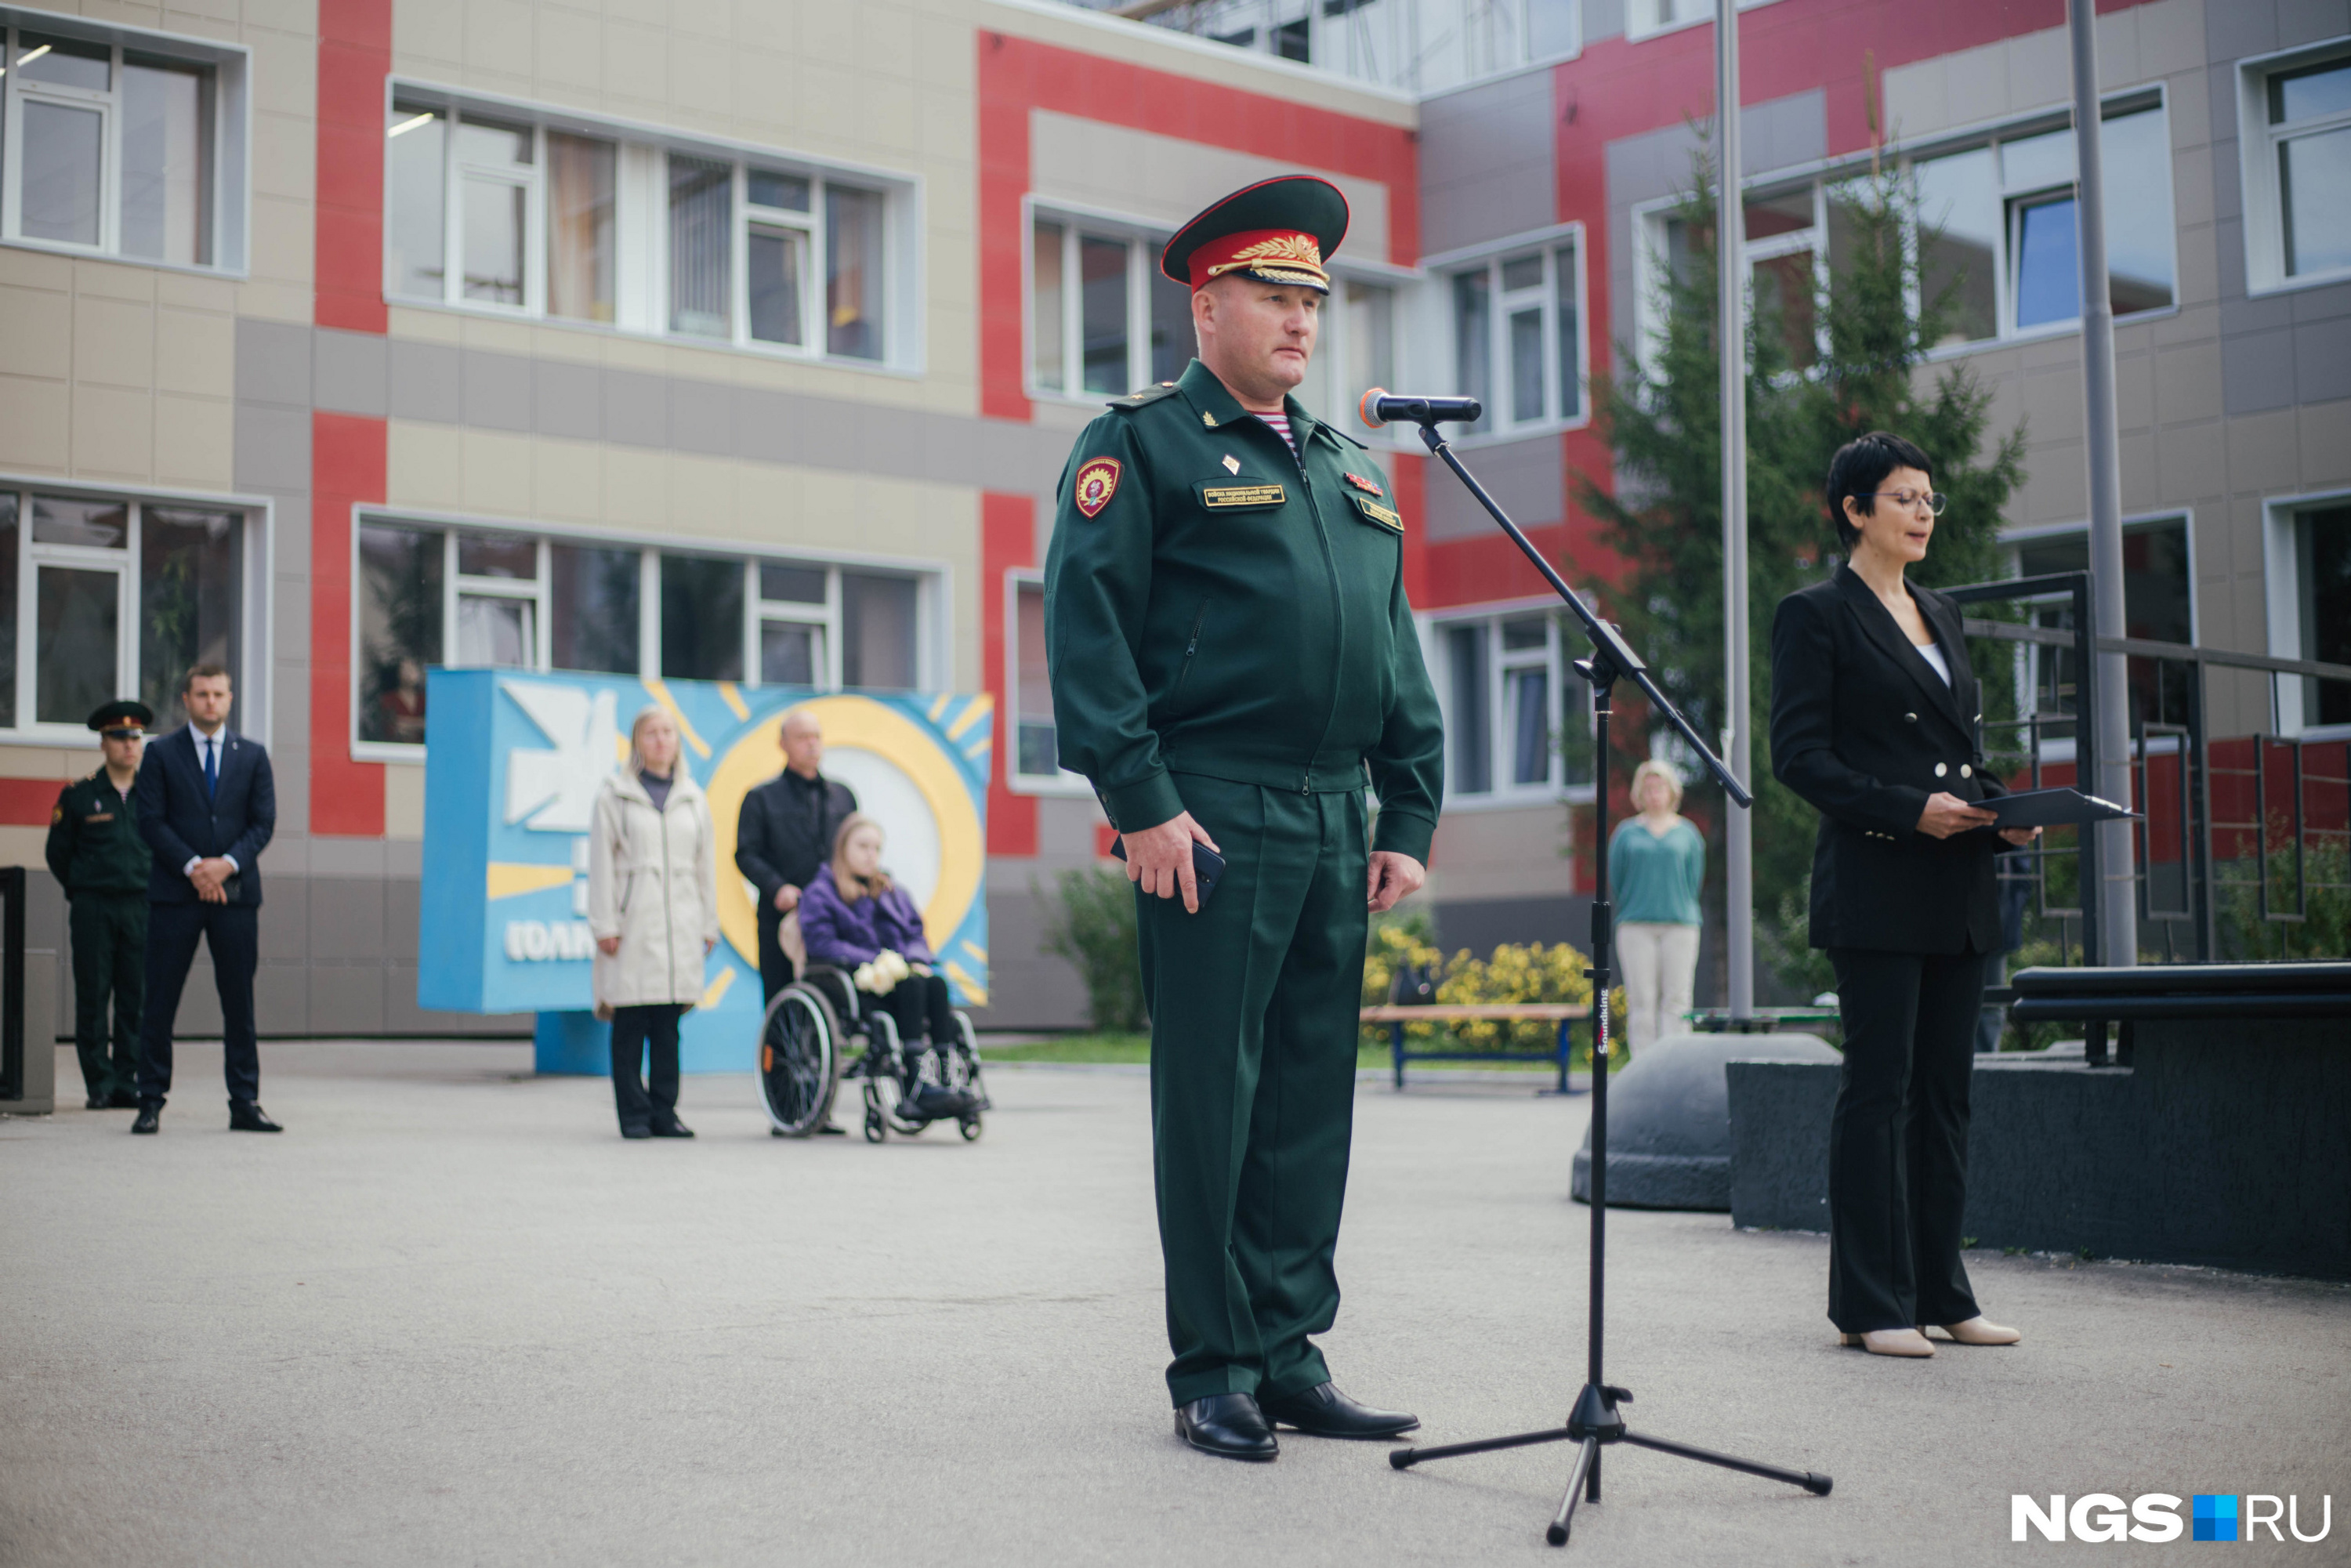 Начальник института, генерал-майор Валерий Косухин произнес речь в память о погибшем